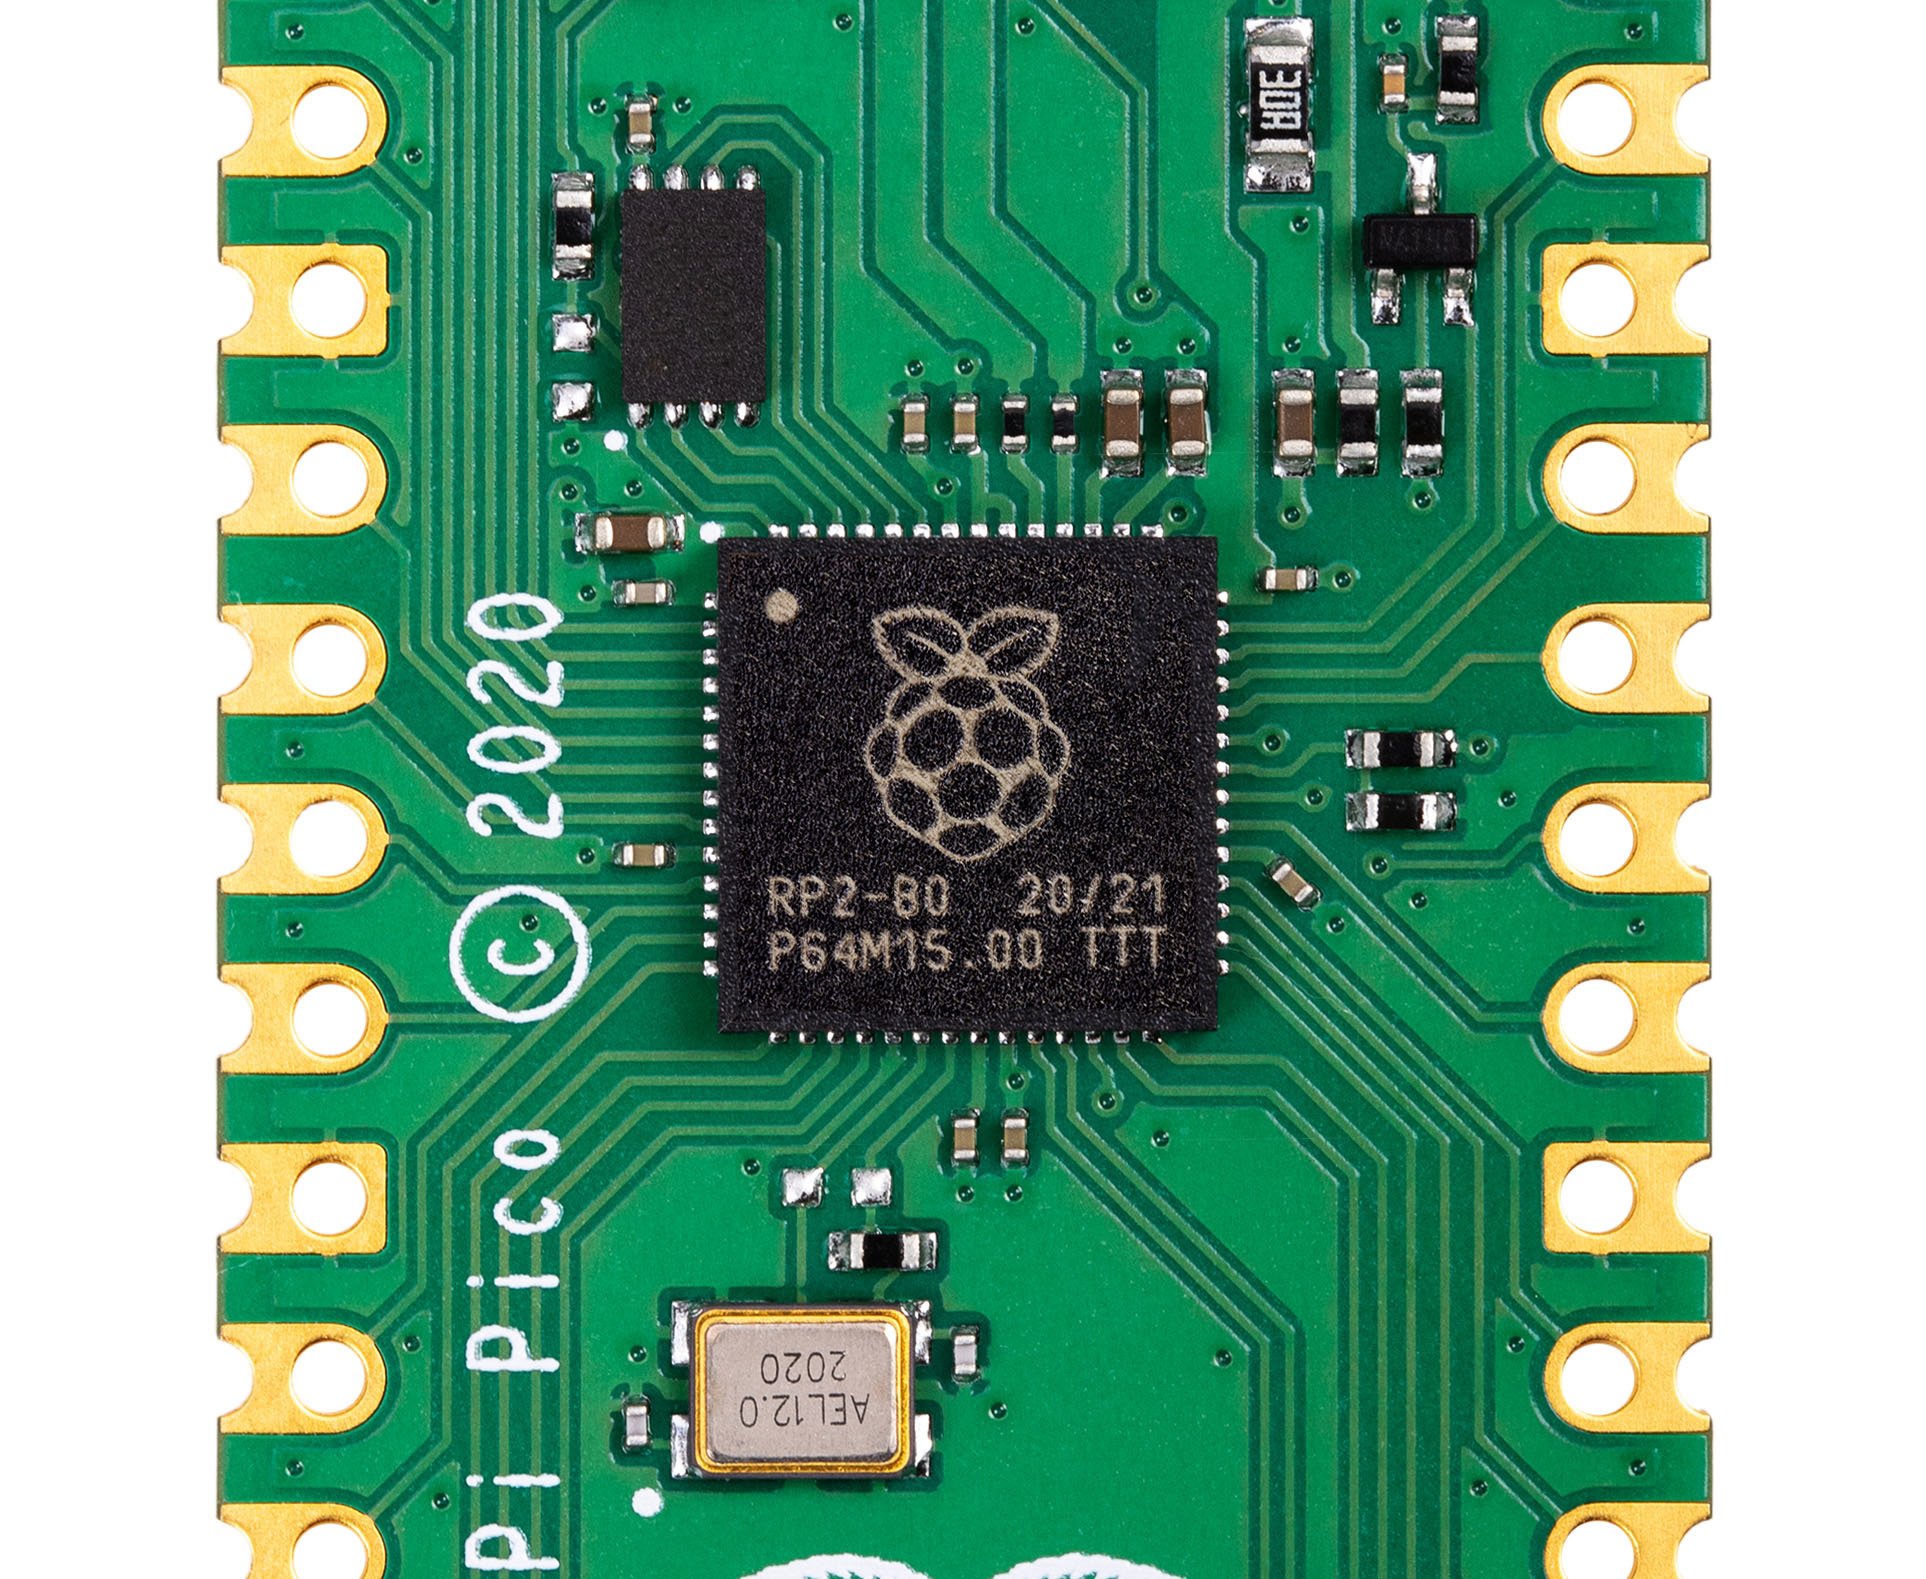 De Raspberry Pi Pico steunt op de eigen RP2040 chip., Rasperry Pi Foundation